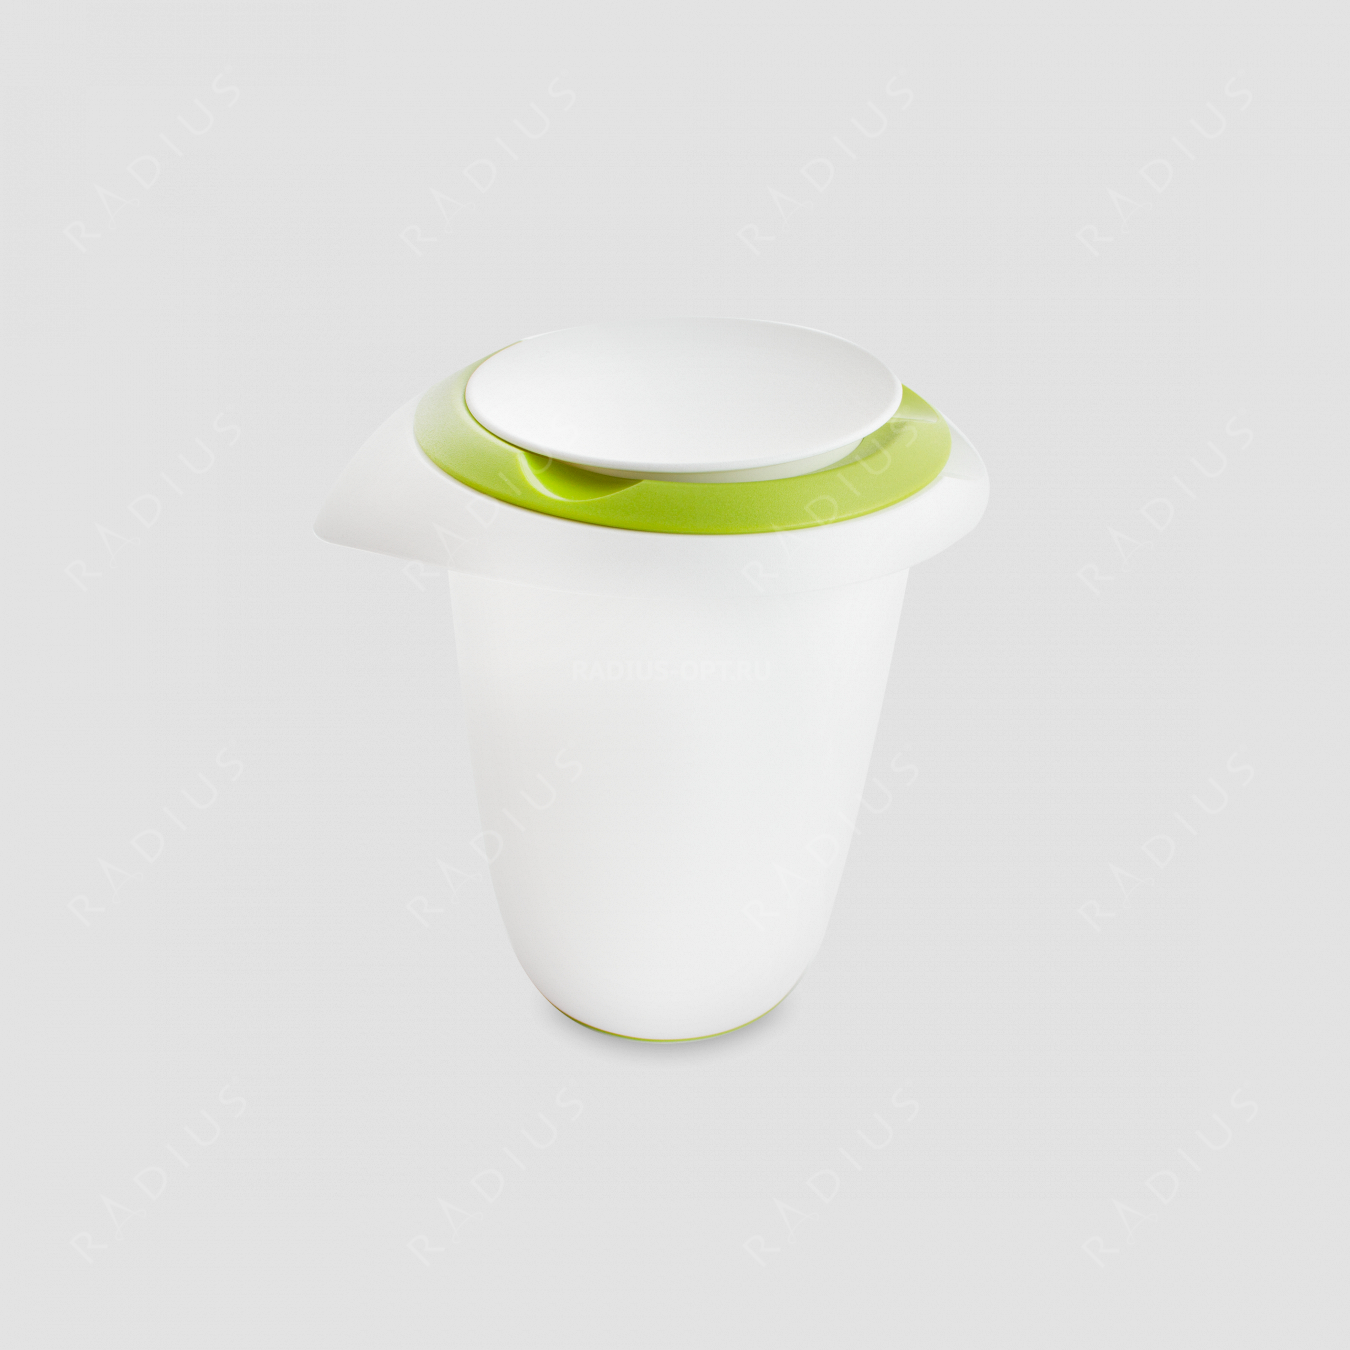 Чаша для смешивания, 1л, двойная крышка (зеленая) от брызг, нескользящее дно, пластик, серия Baking, Westmark, Германия